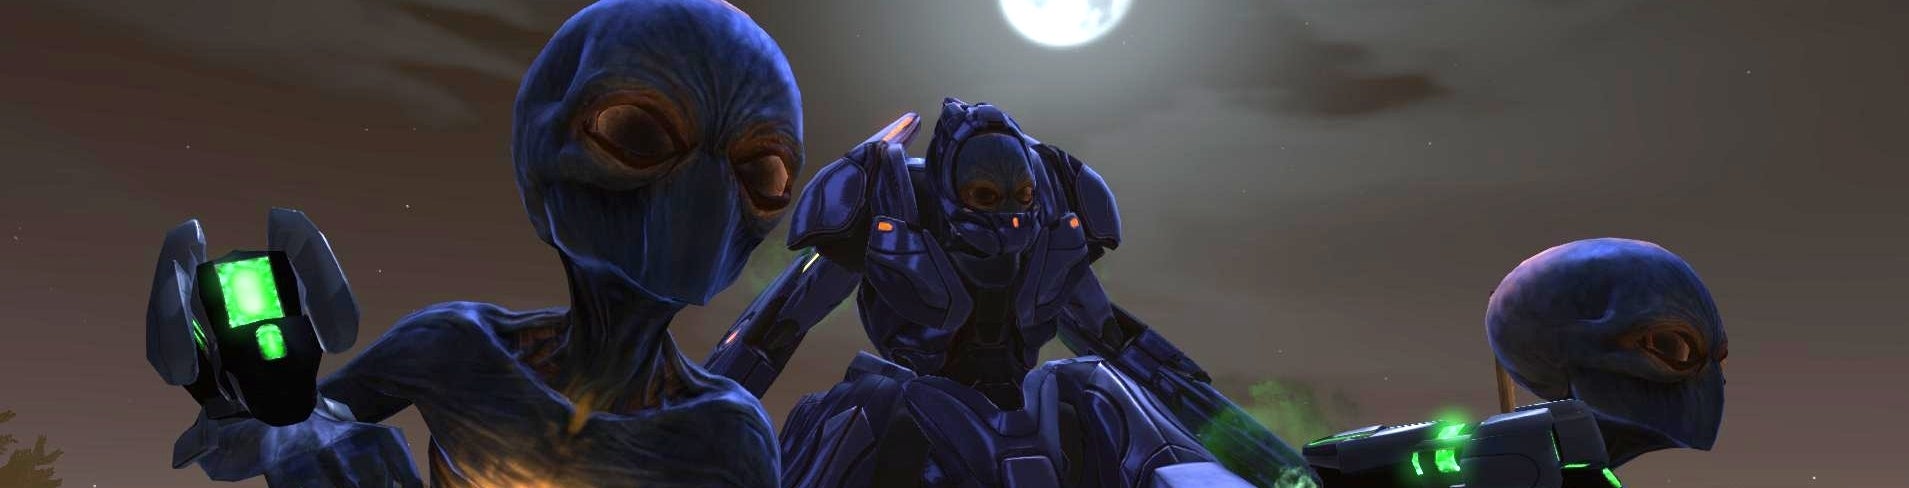 Obrazki dla Enemy Within na nowo definiuje XCOM